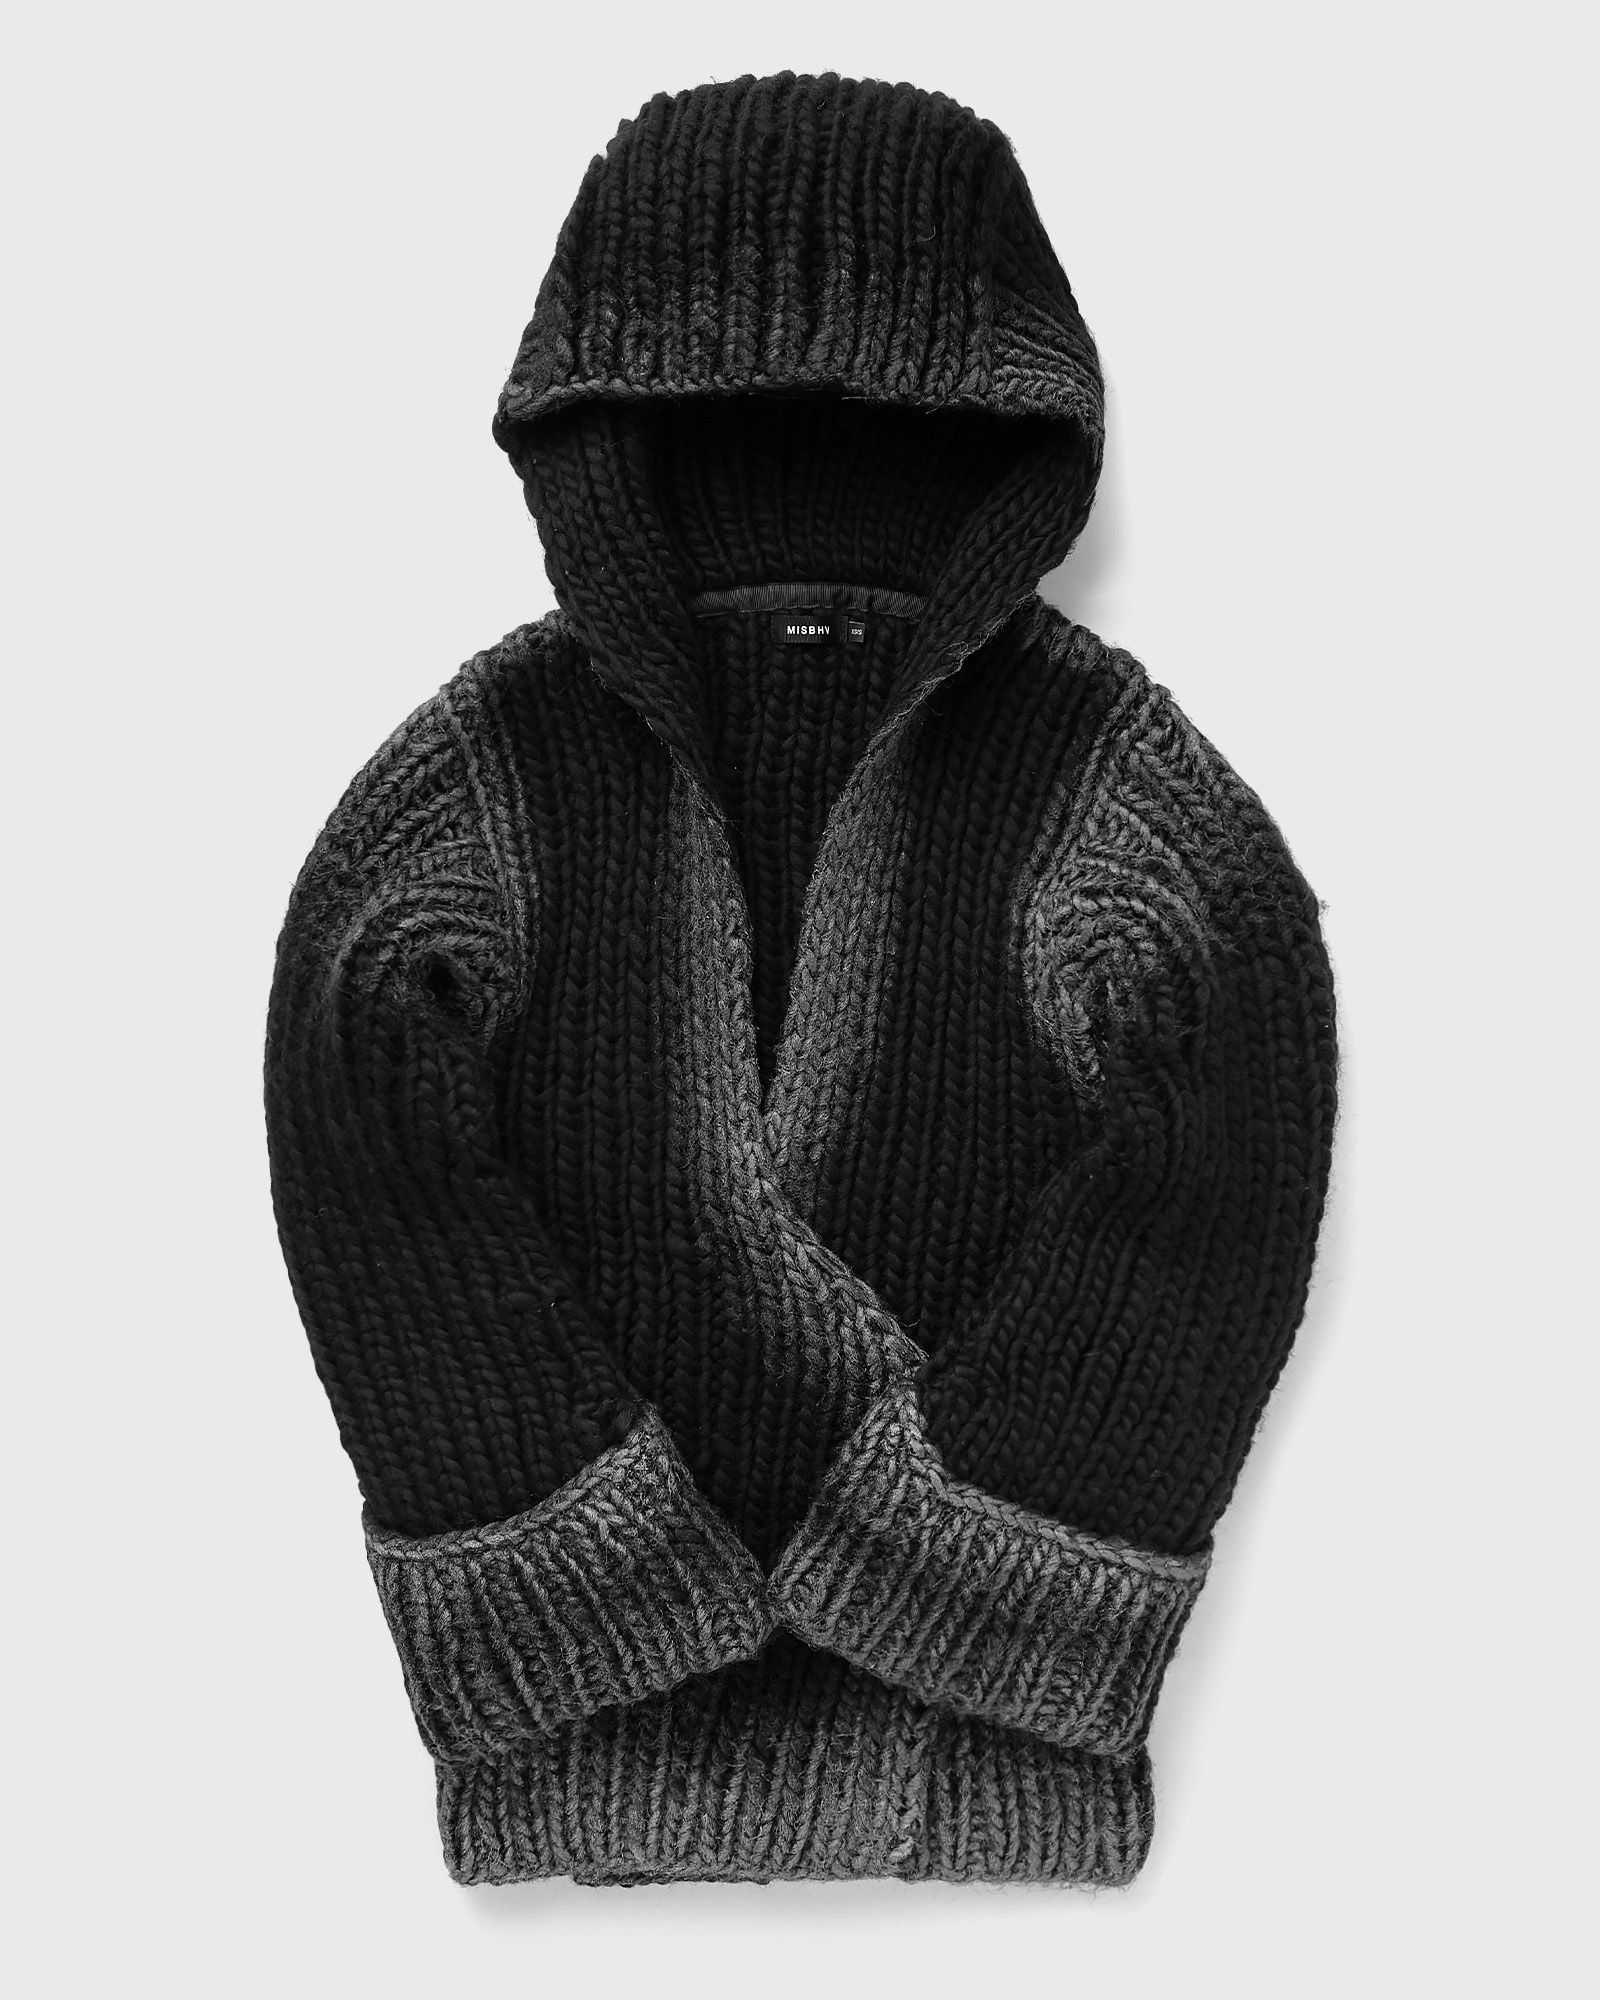 MISBHV - bulky wax hooded knitted dress women dresses black in größe:m/l